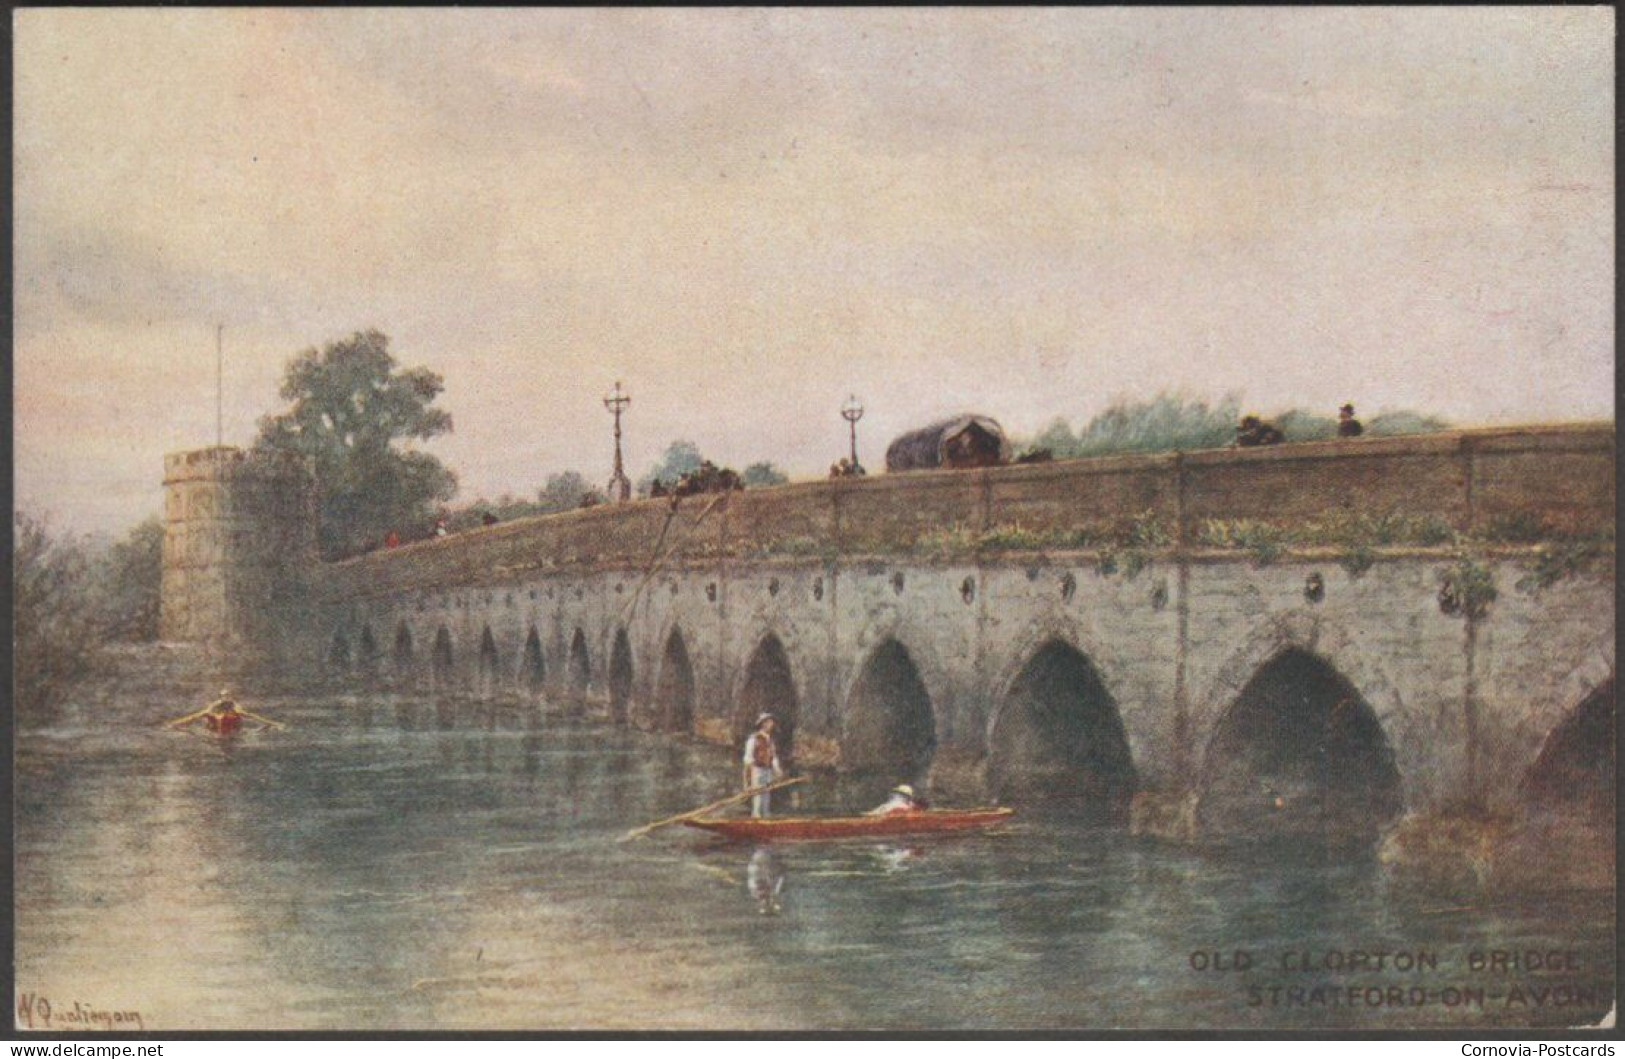 Old Clopton Bridge, Stratford-on-Avon, C.1910s - Salmon Postcard - Stratford Upon Avon